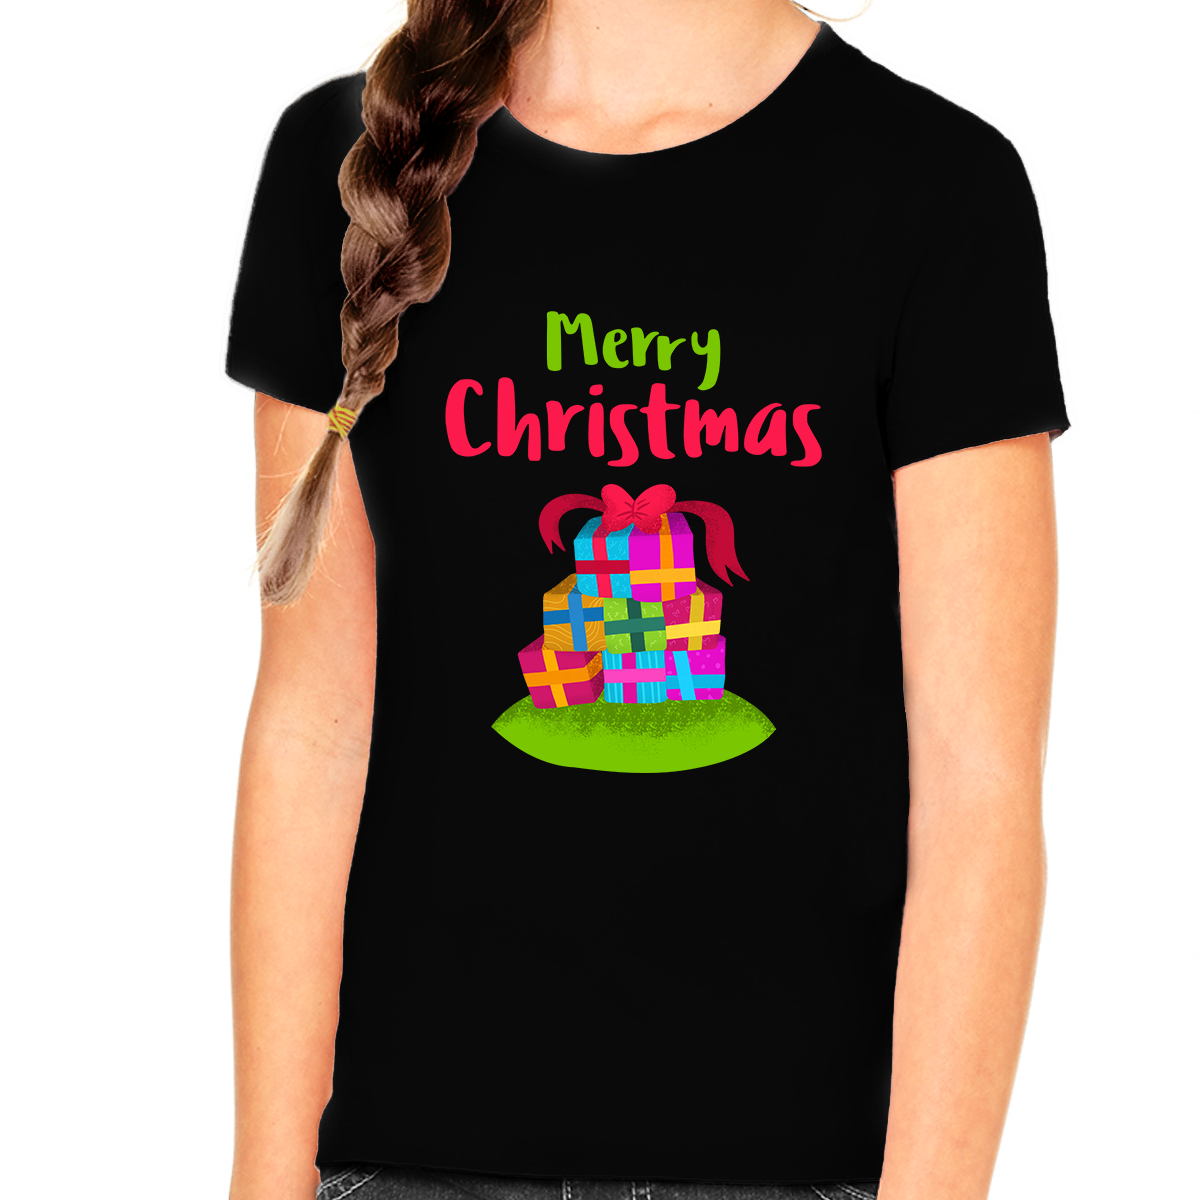 Funny Christmas Gift Cute Christmas Shirts for Girls Funny Christmas Shirt Christmas Gifts for Girls